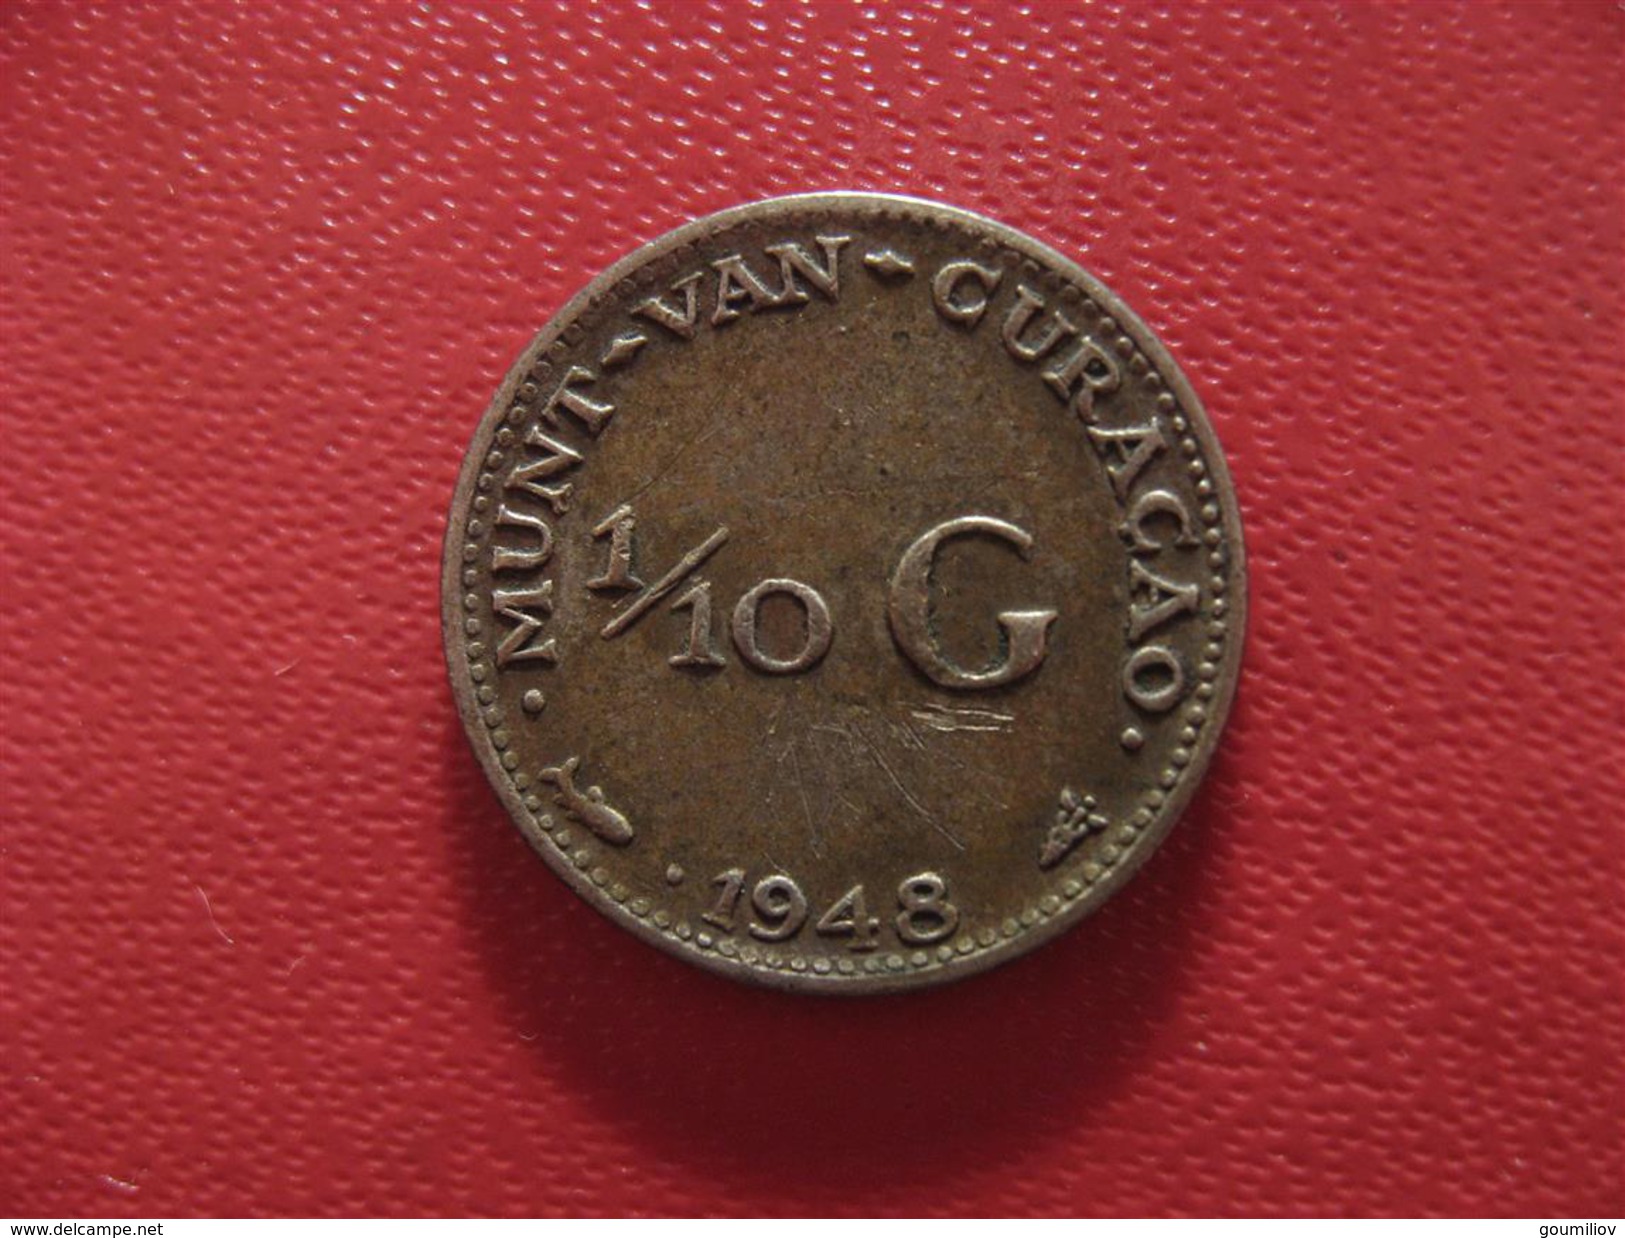 Curacao - Antilles Neerlandaises - 1/10 Gulden 1948 1668 - Curaçao